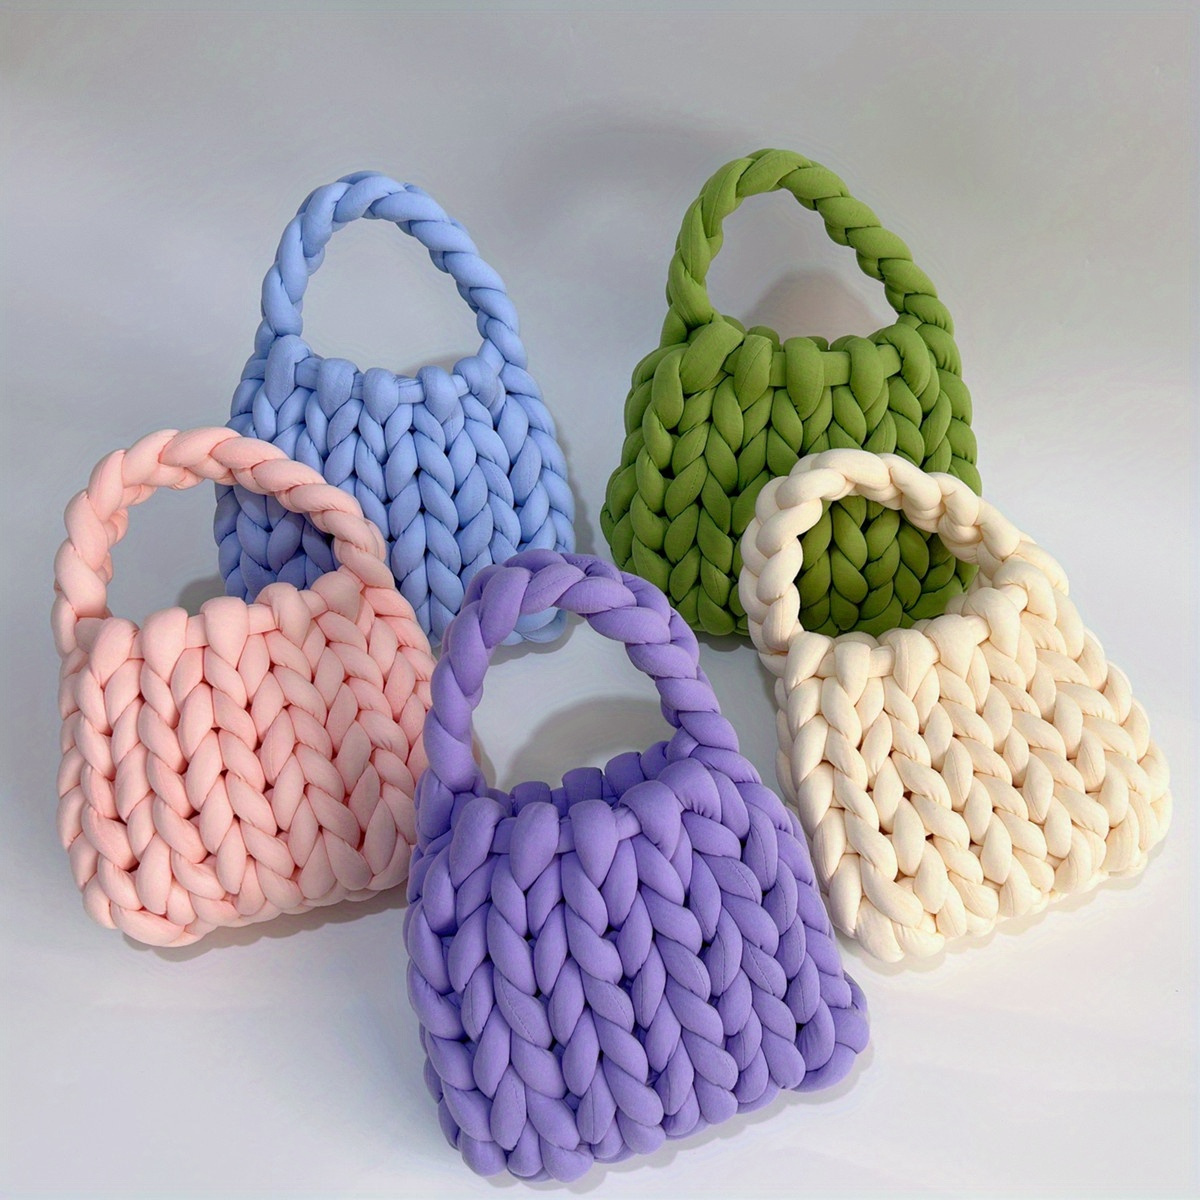 YZdevelop Hand-knit Woven Thread Thick Basket Blanket Braided DIY Crochet  Cloth Fancy Yarn